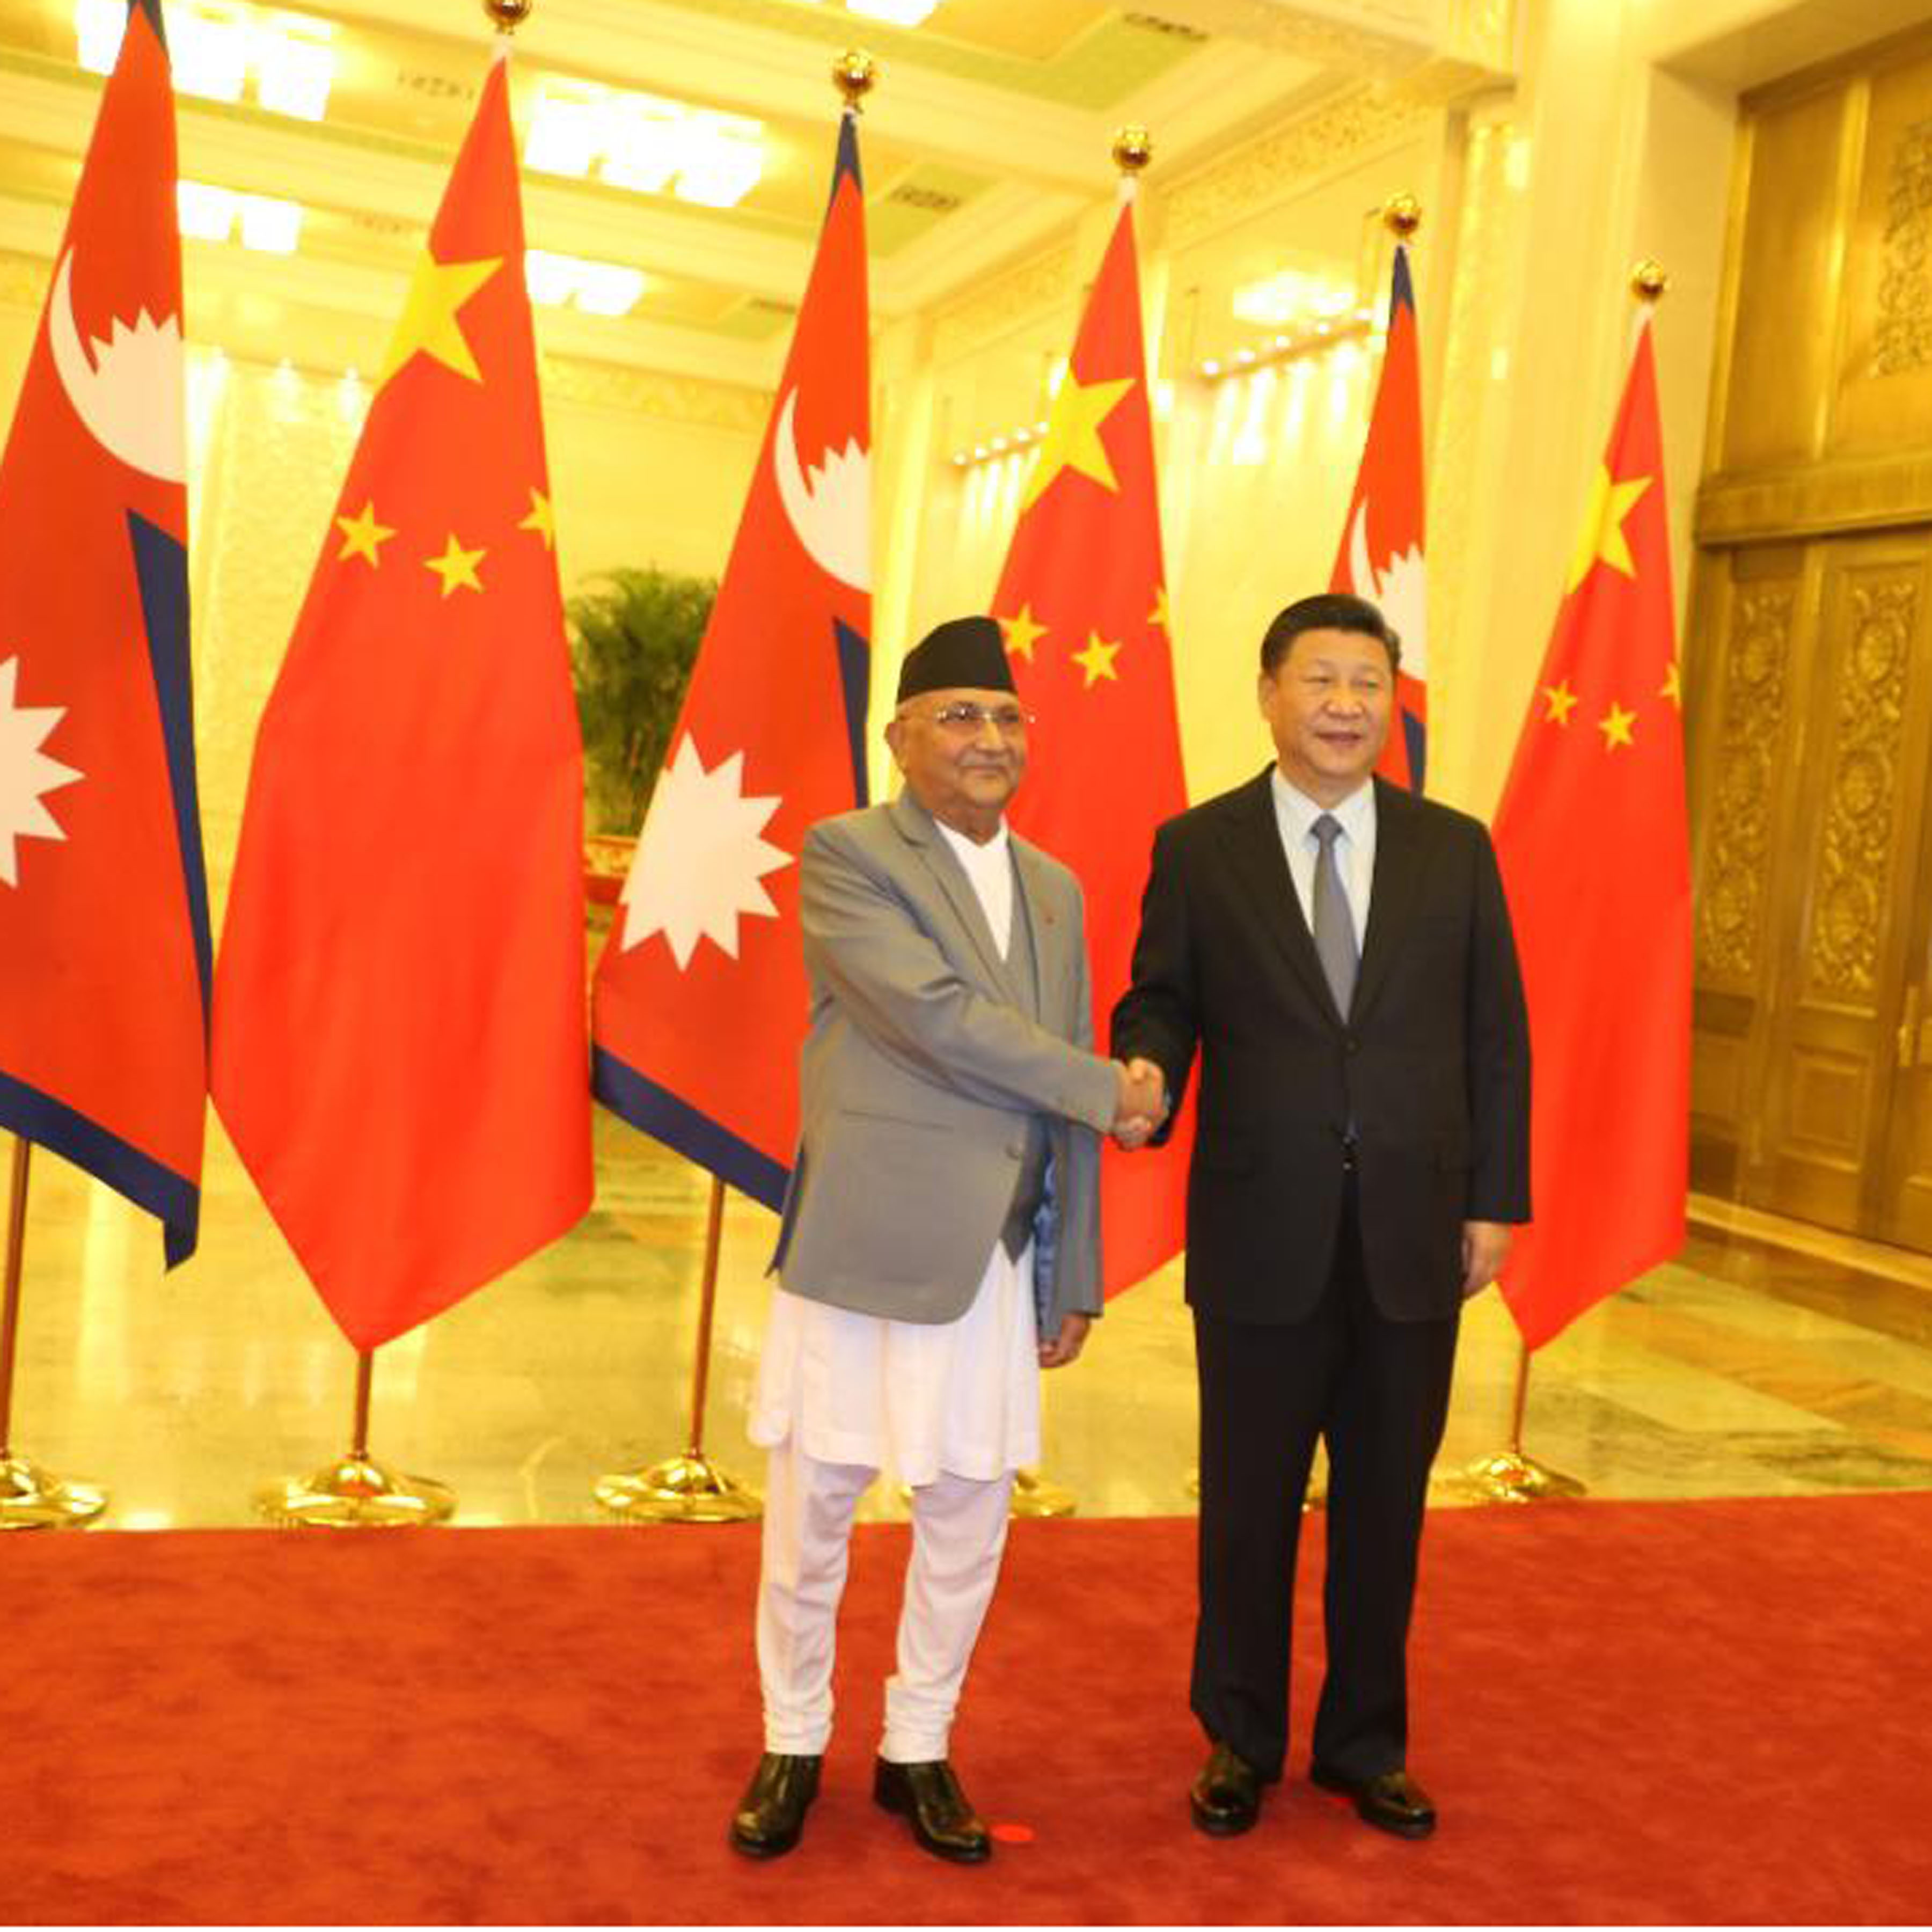 उपयुक्त समयमा नेपाल भ्रमण गर्छुः चिनियाँ राष्ट्रपति